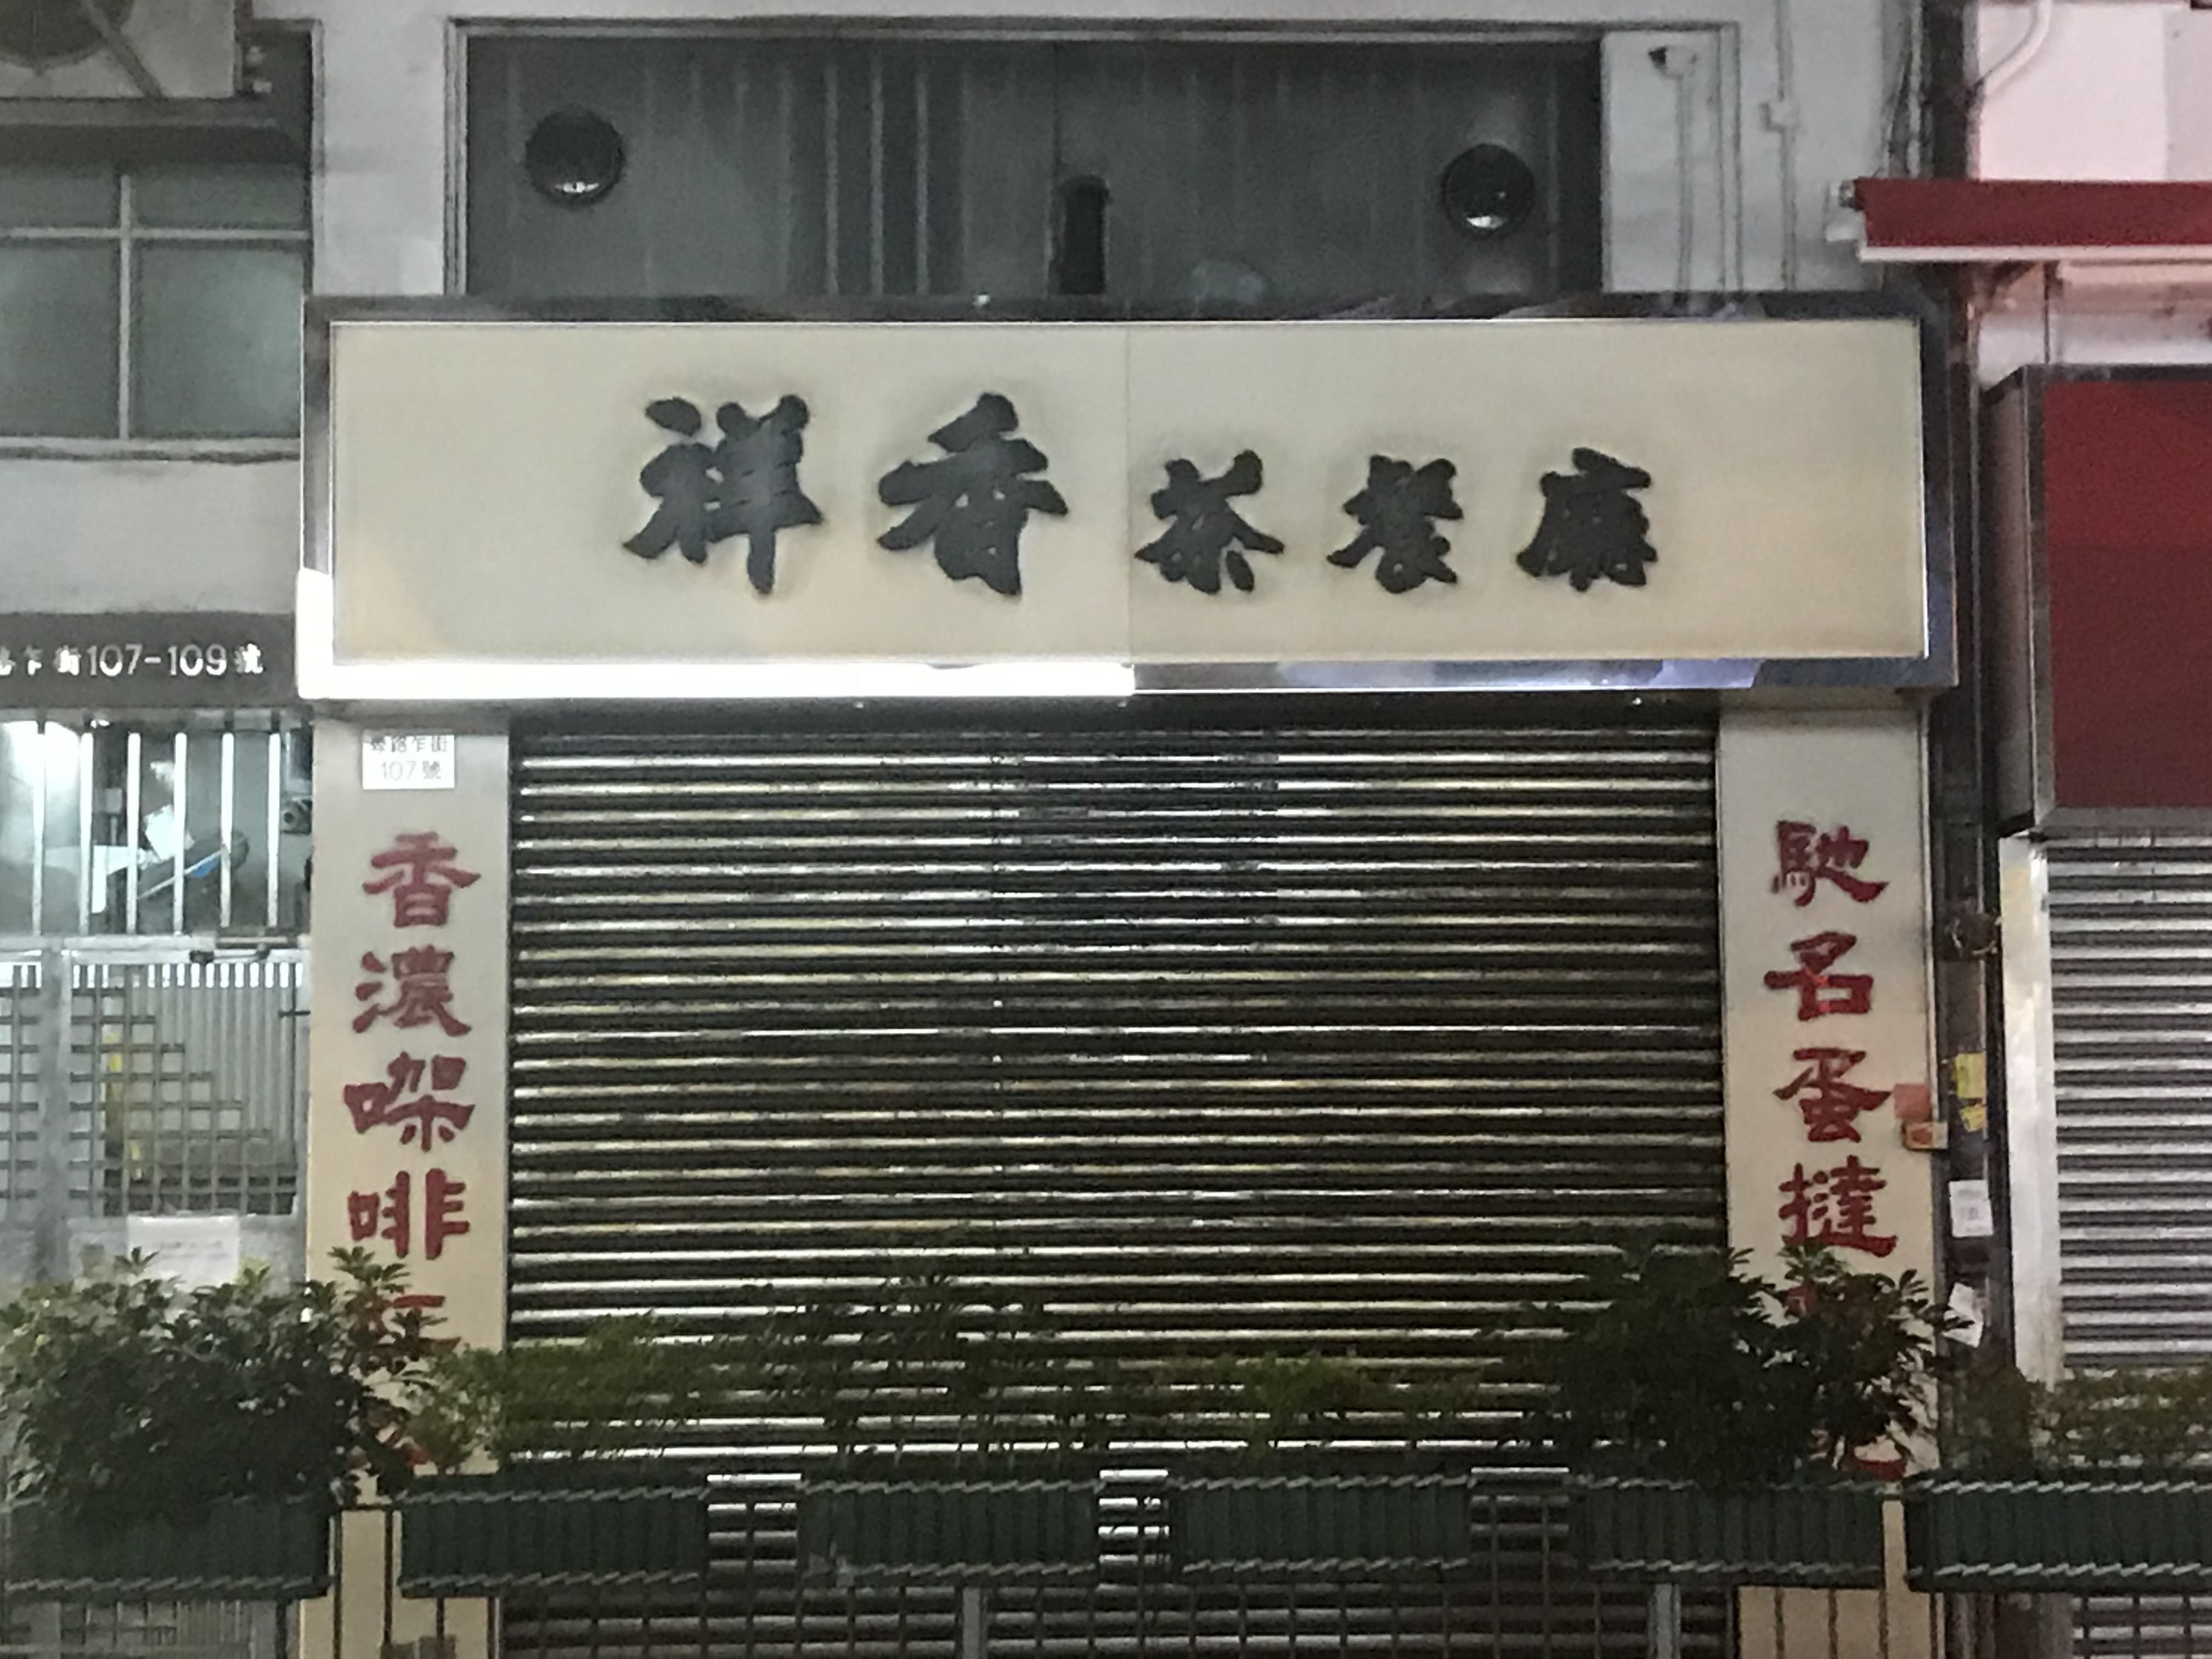 Cheung Heung Tea Restaurant sign